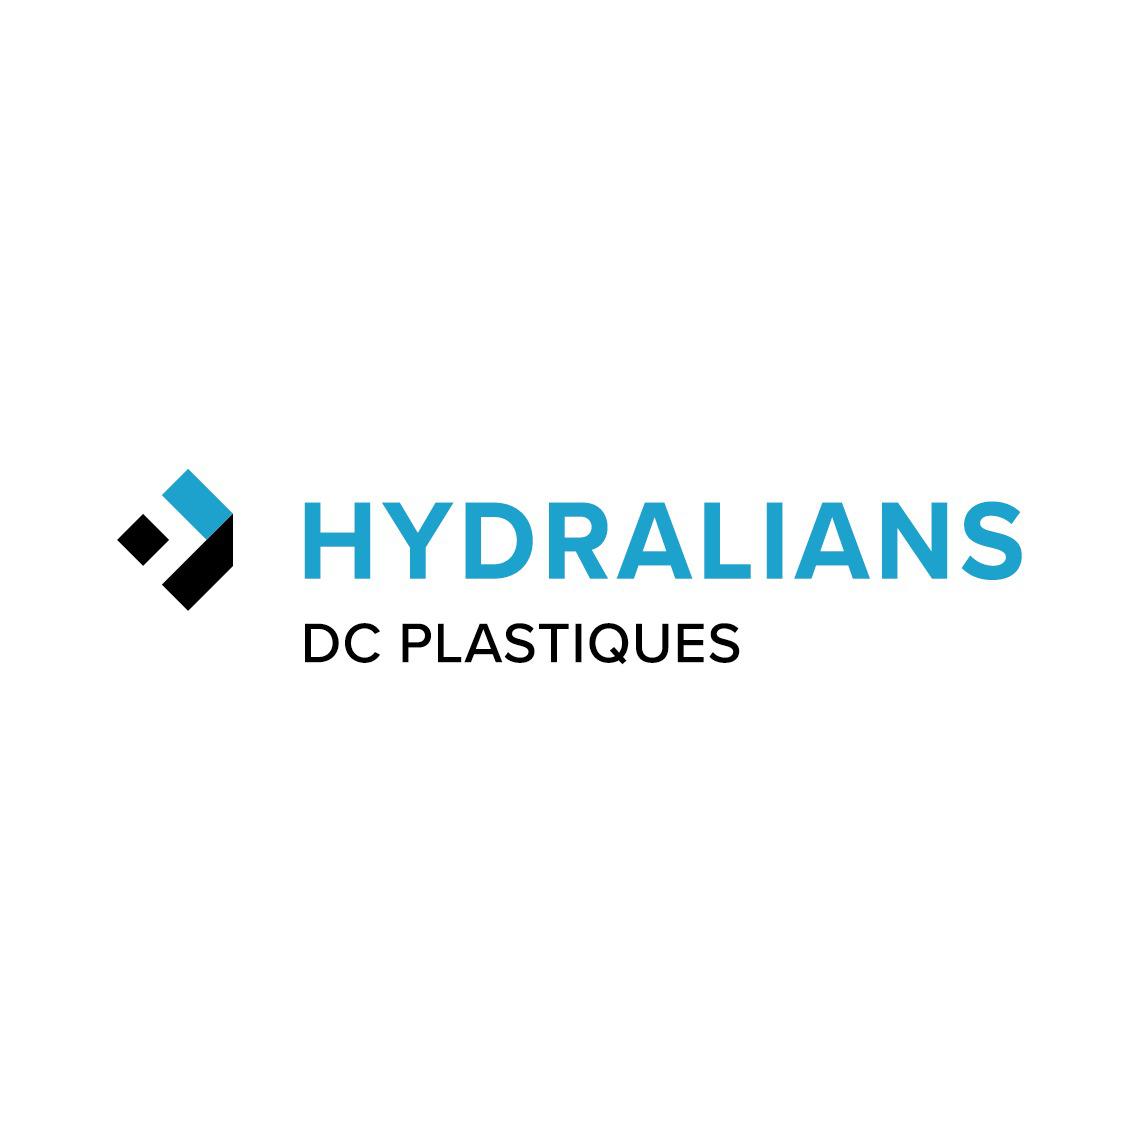 HYDRALIANS DC PLASTIQUES Bordeaux Logo